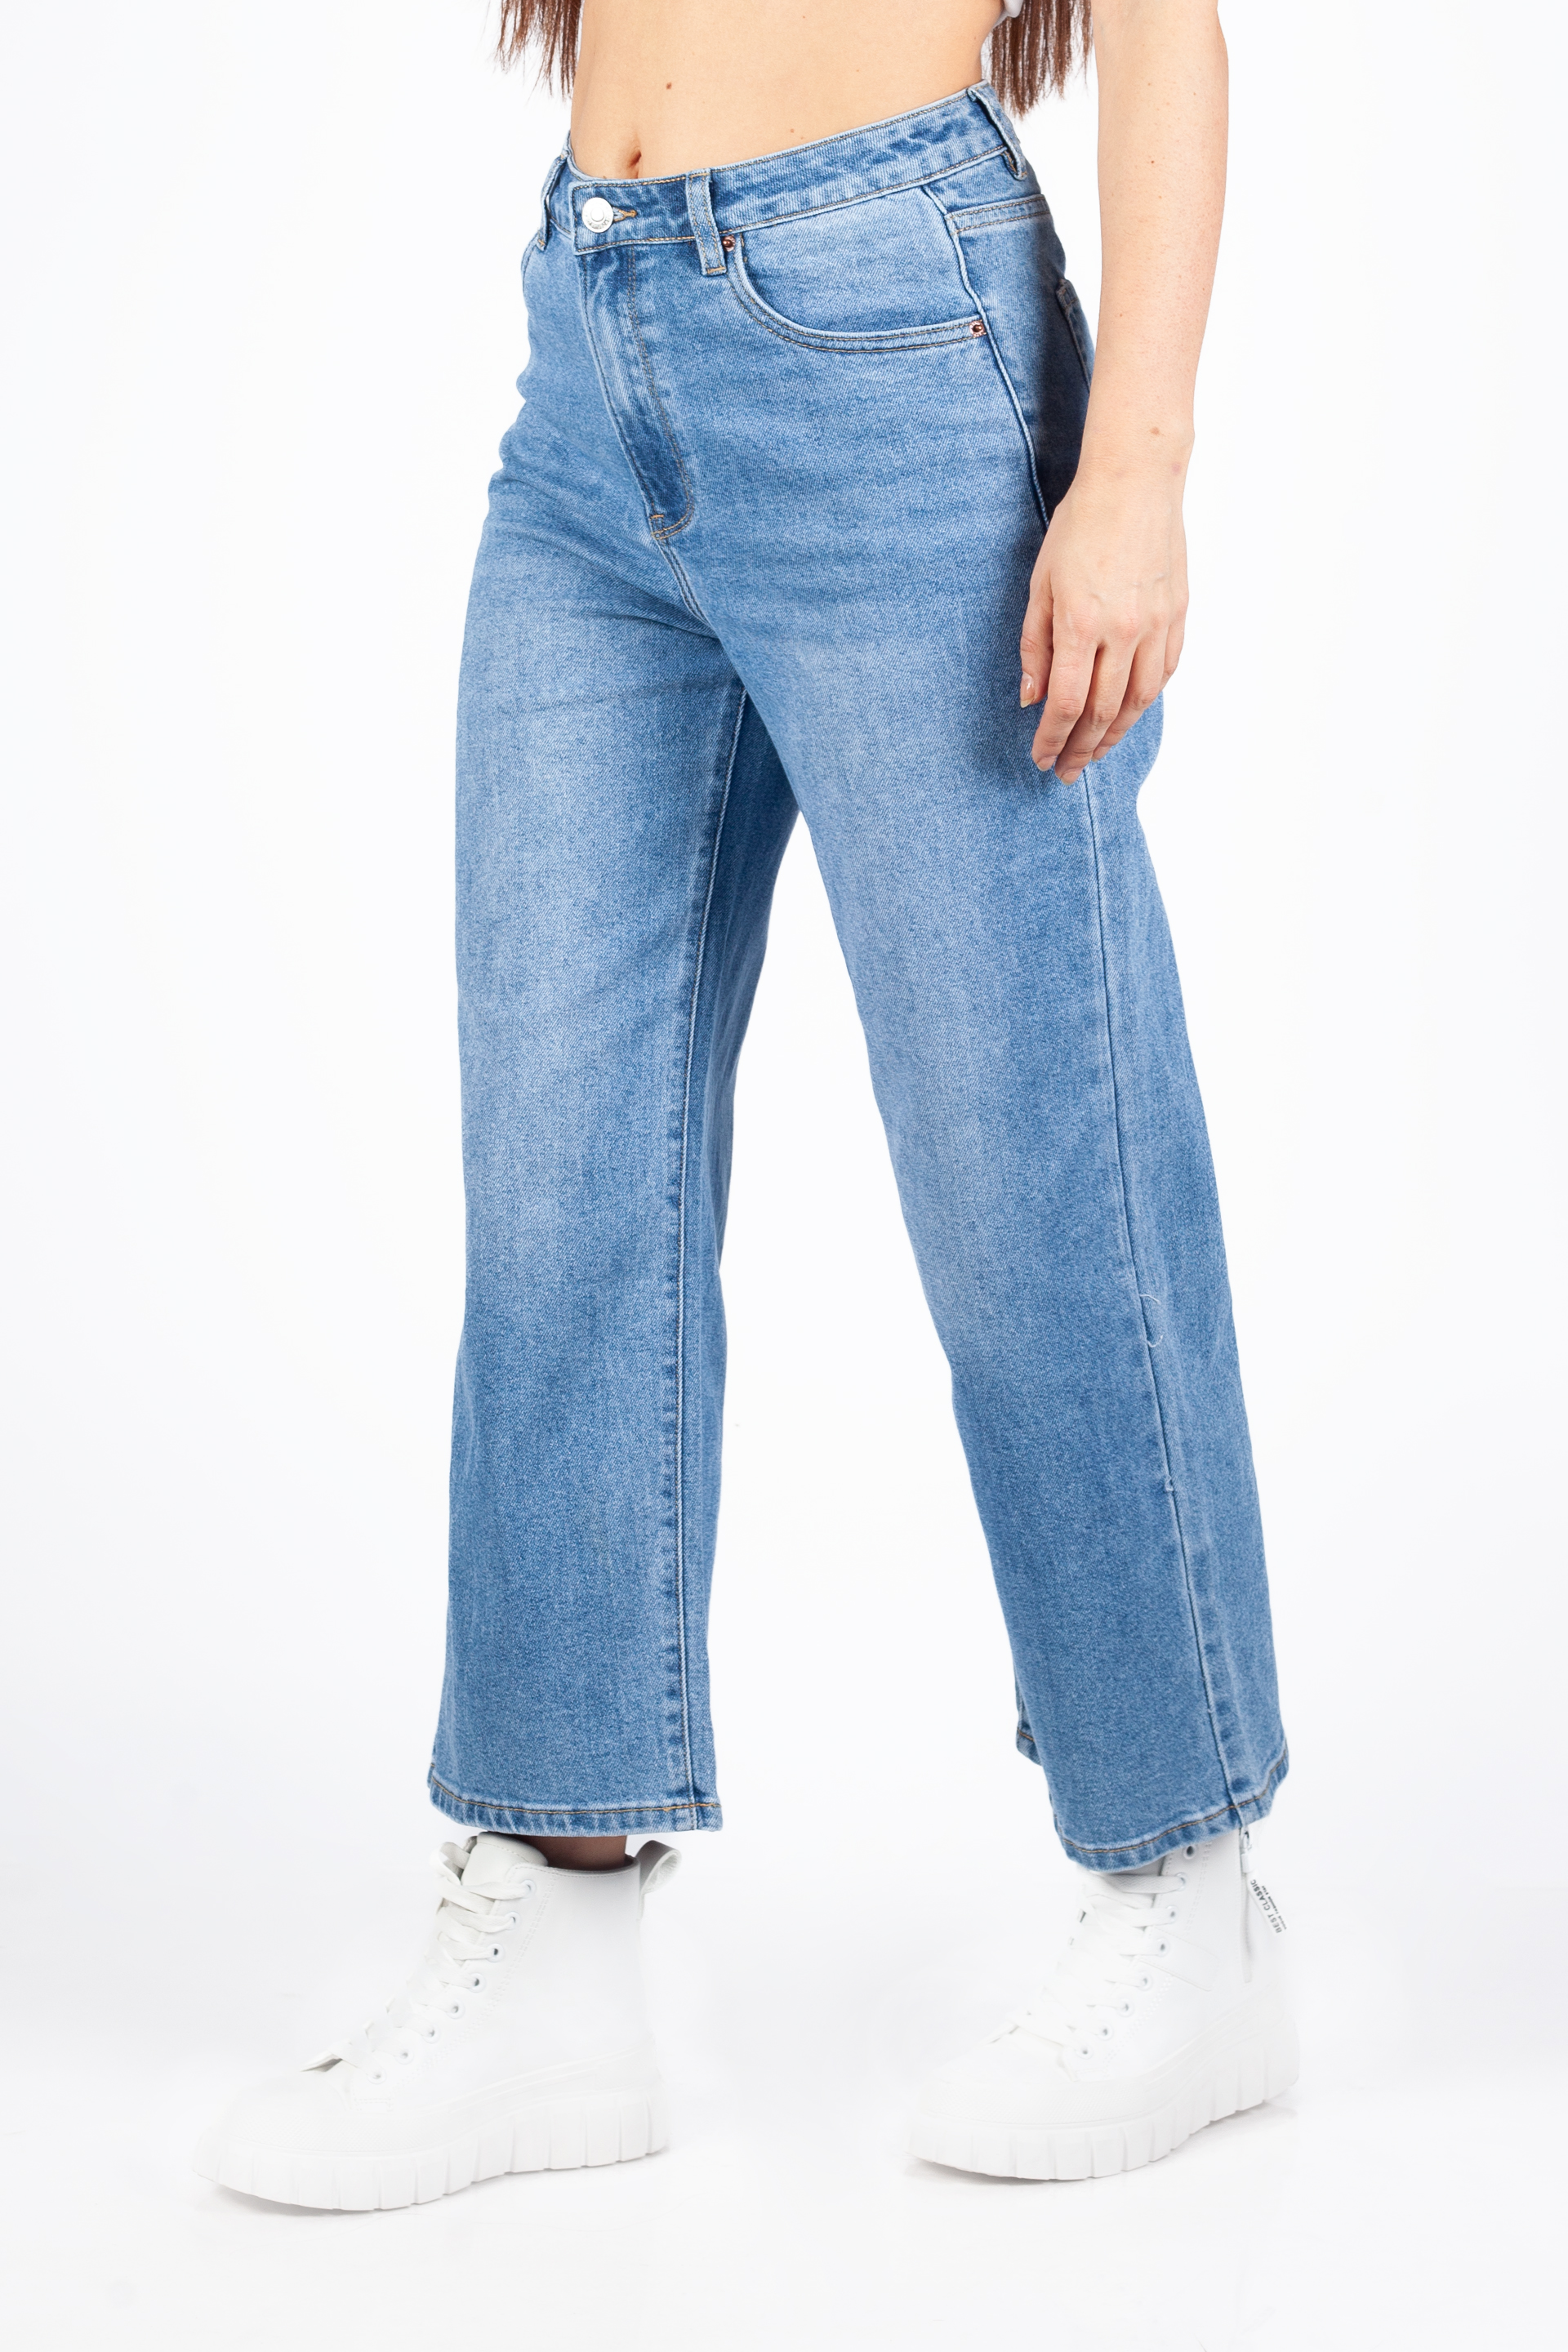 Jeans VS MISS VS8123